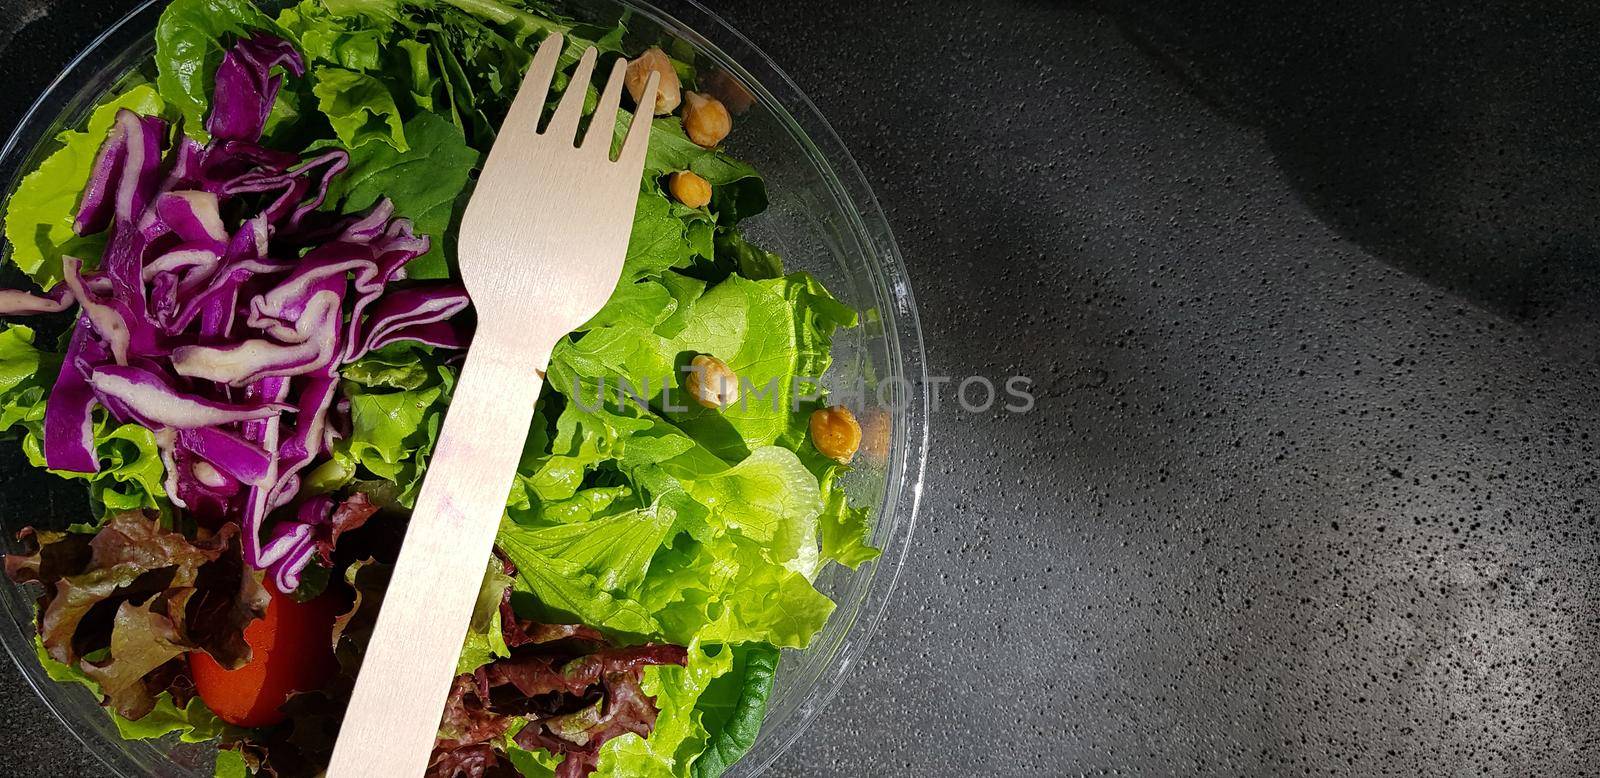 Healthy vegetable salad by antoksena